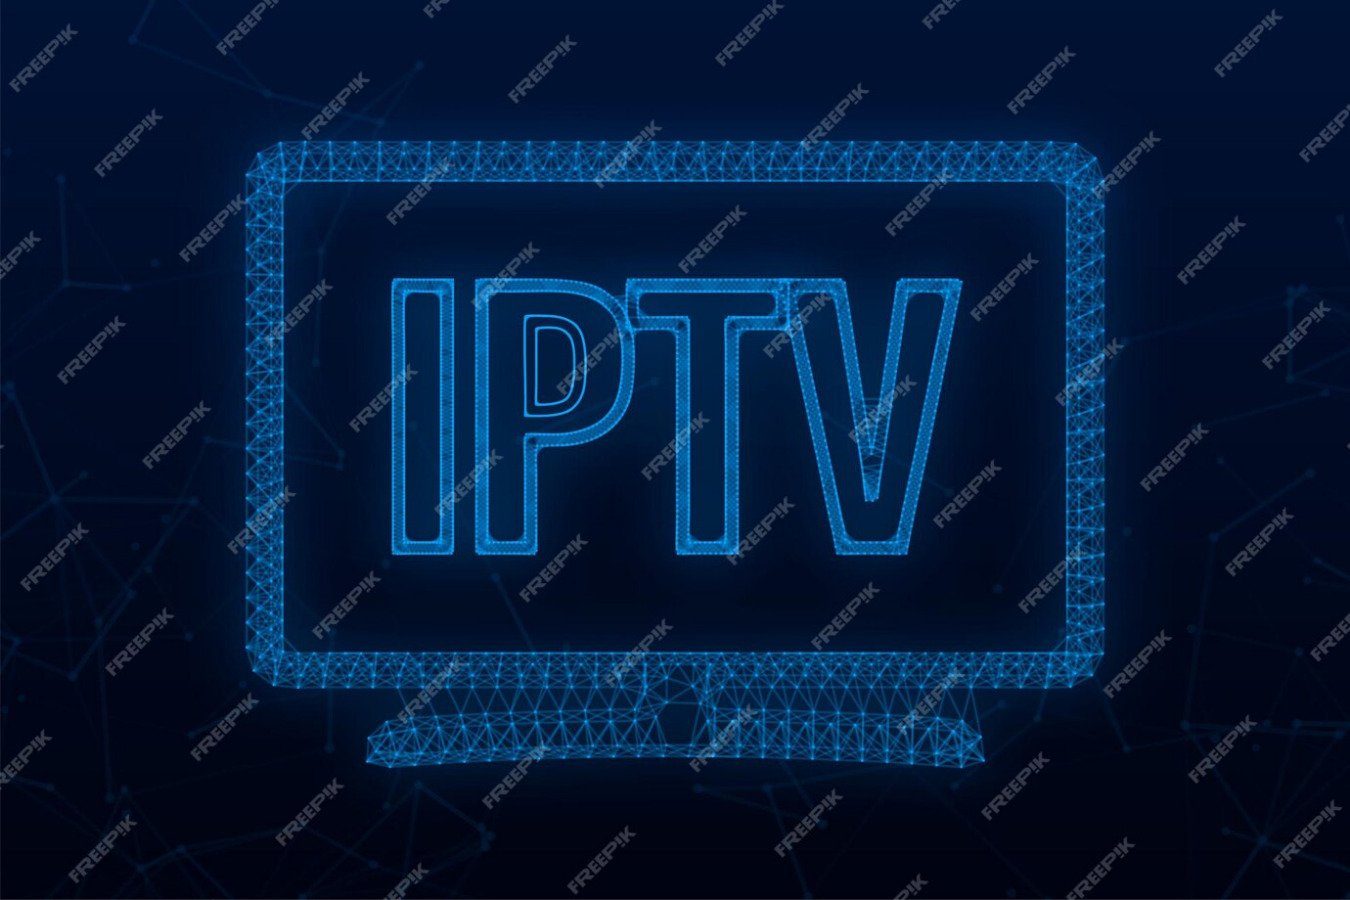 ©IPTV (NFL-NHL- NBA-MLB- Soccer- PPV) 1 Year warranty